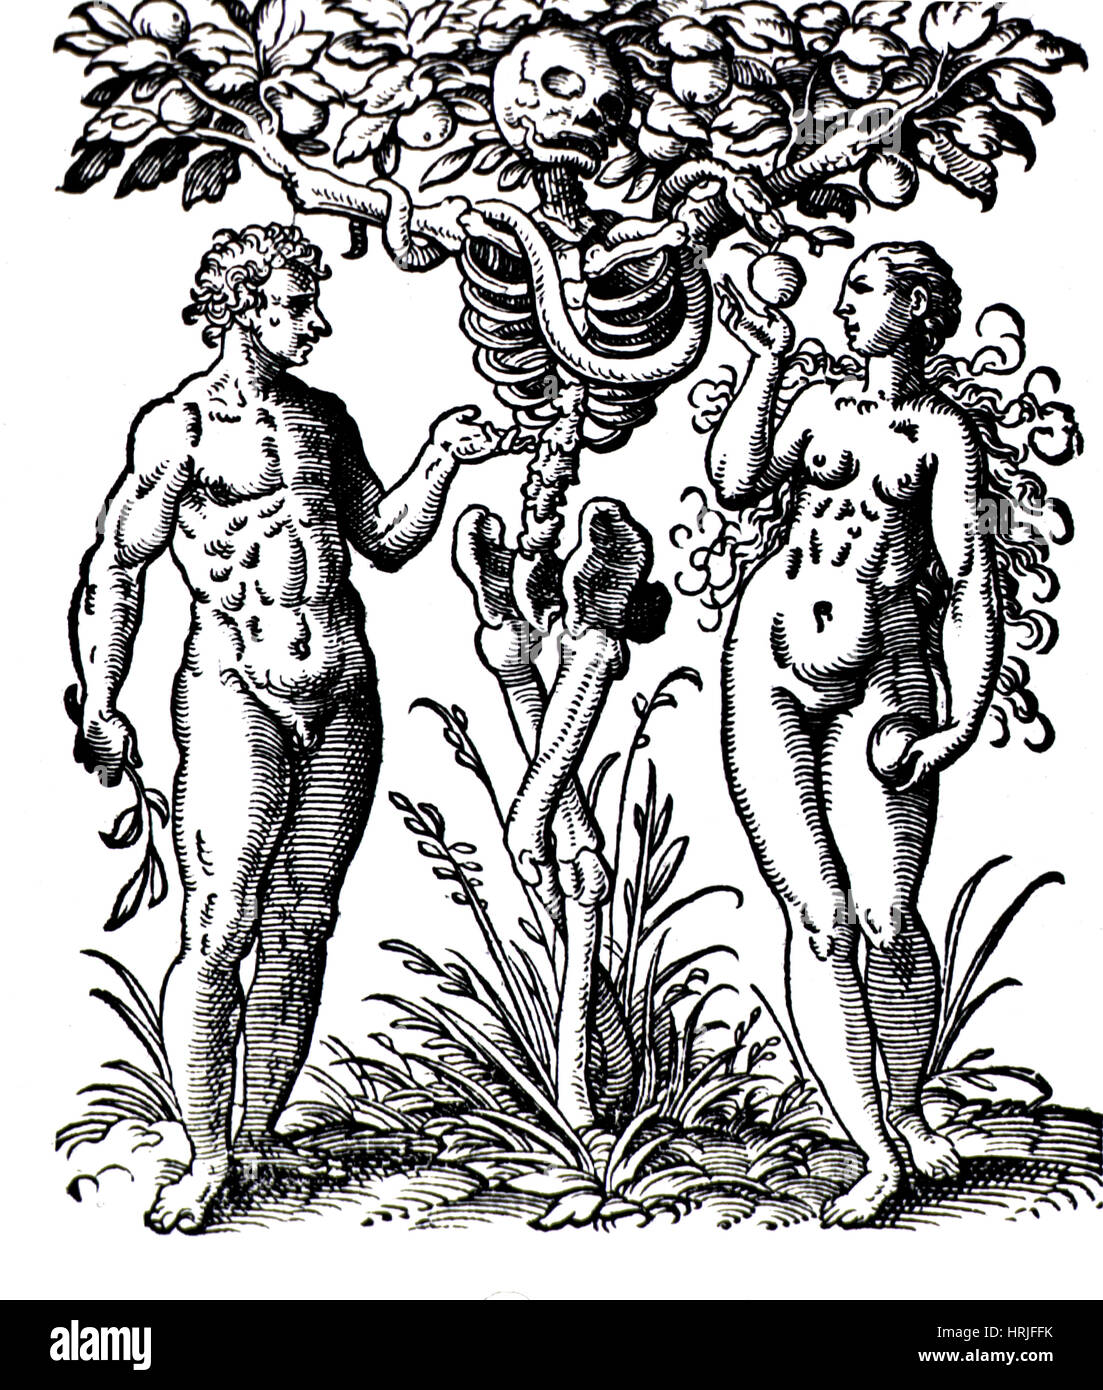 Jardin d'Eden, Adam et Eve, 1580 Banque D'Images